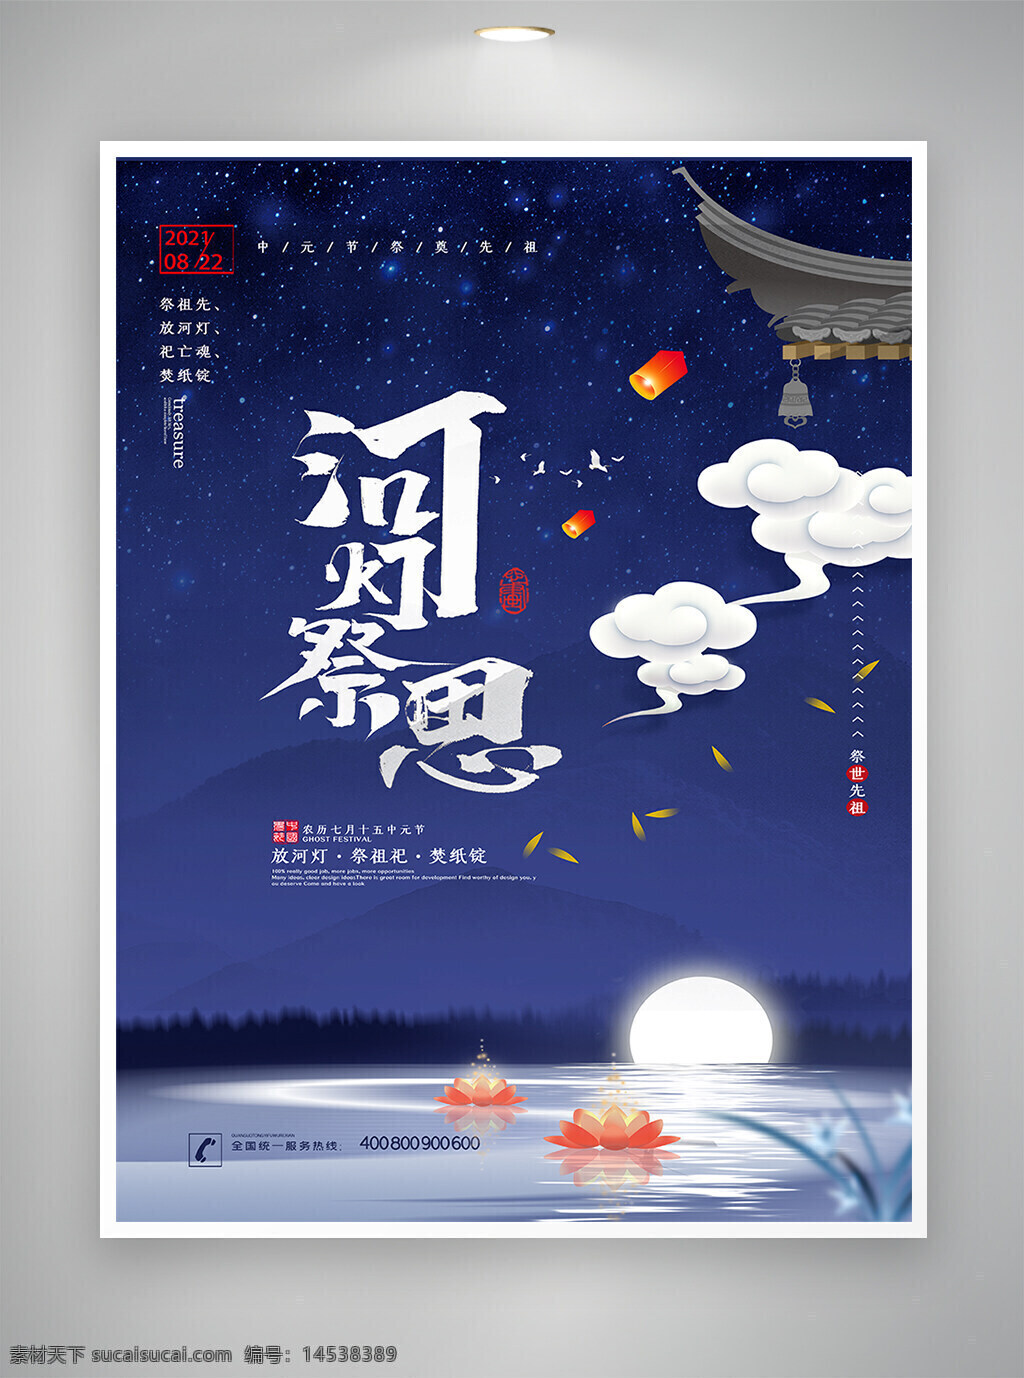 中元节 中元节海报 节日海报 宣传海报 海报 中国传统节日